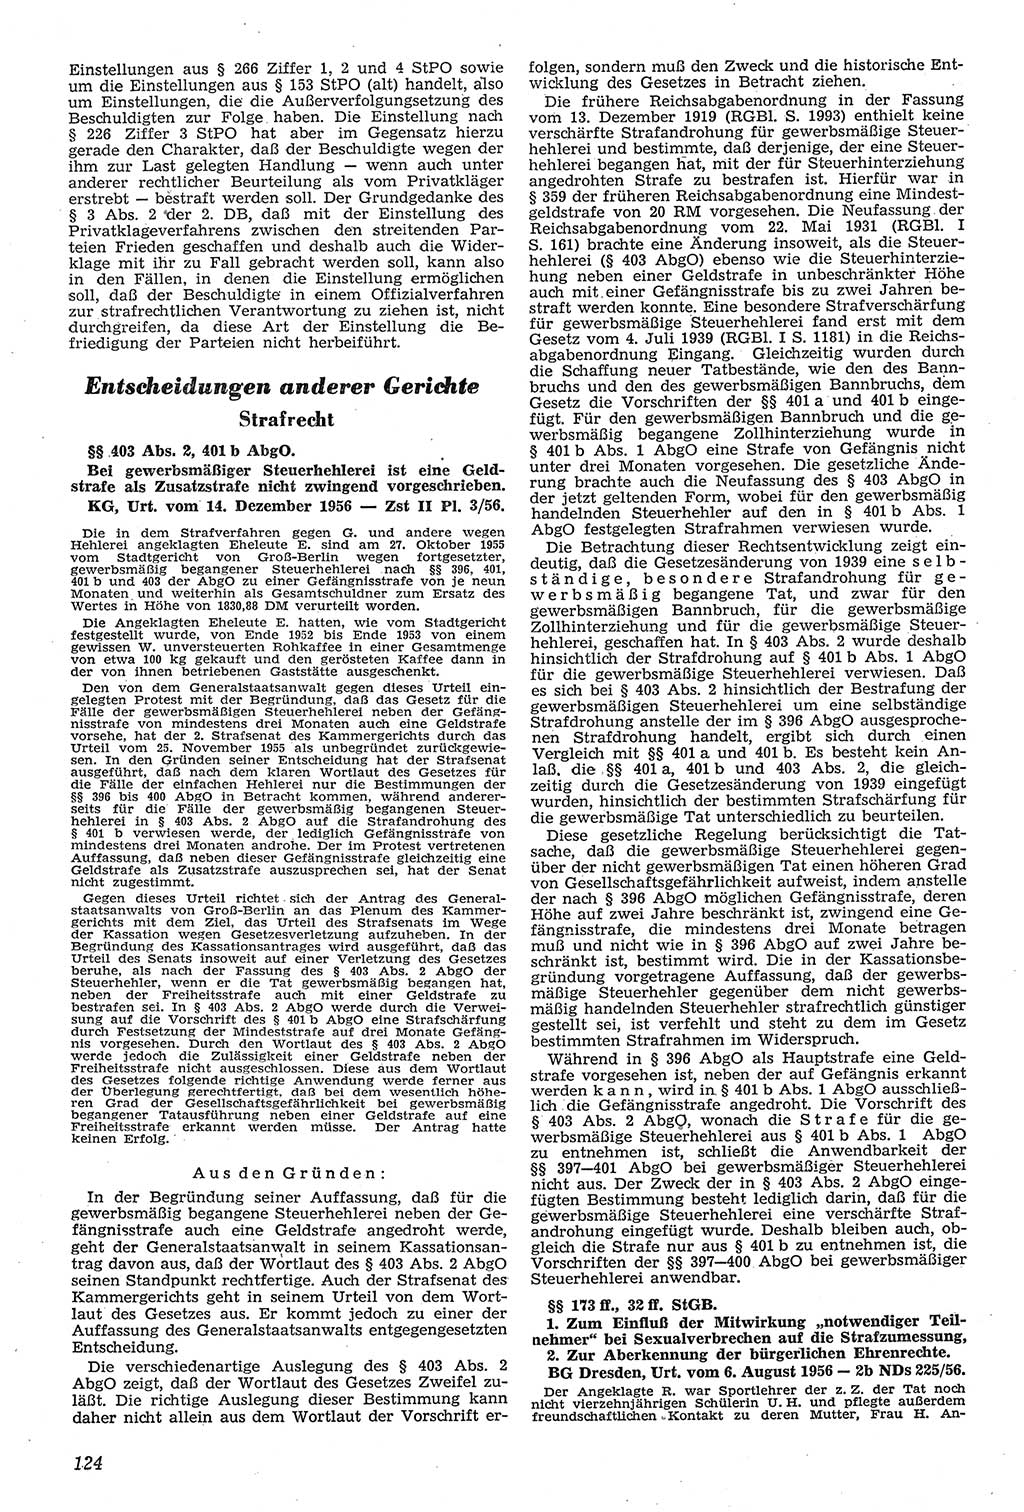 Neue Justiz (NJ), Zeitschrift für Recht und Rechtswissenschaft [Deutsche Demokratische Republik (DDR)], 11. Jahrgang 1957, Seite 124 (NJ DDR 1957, S. 124)